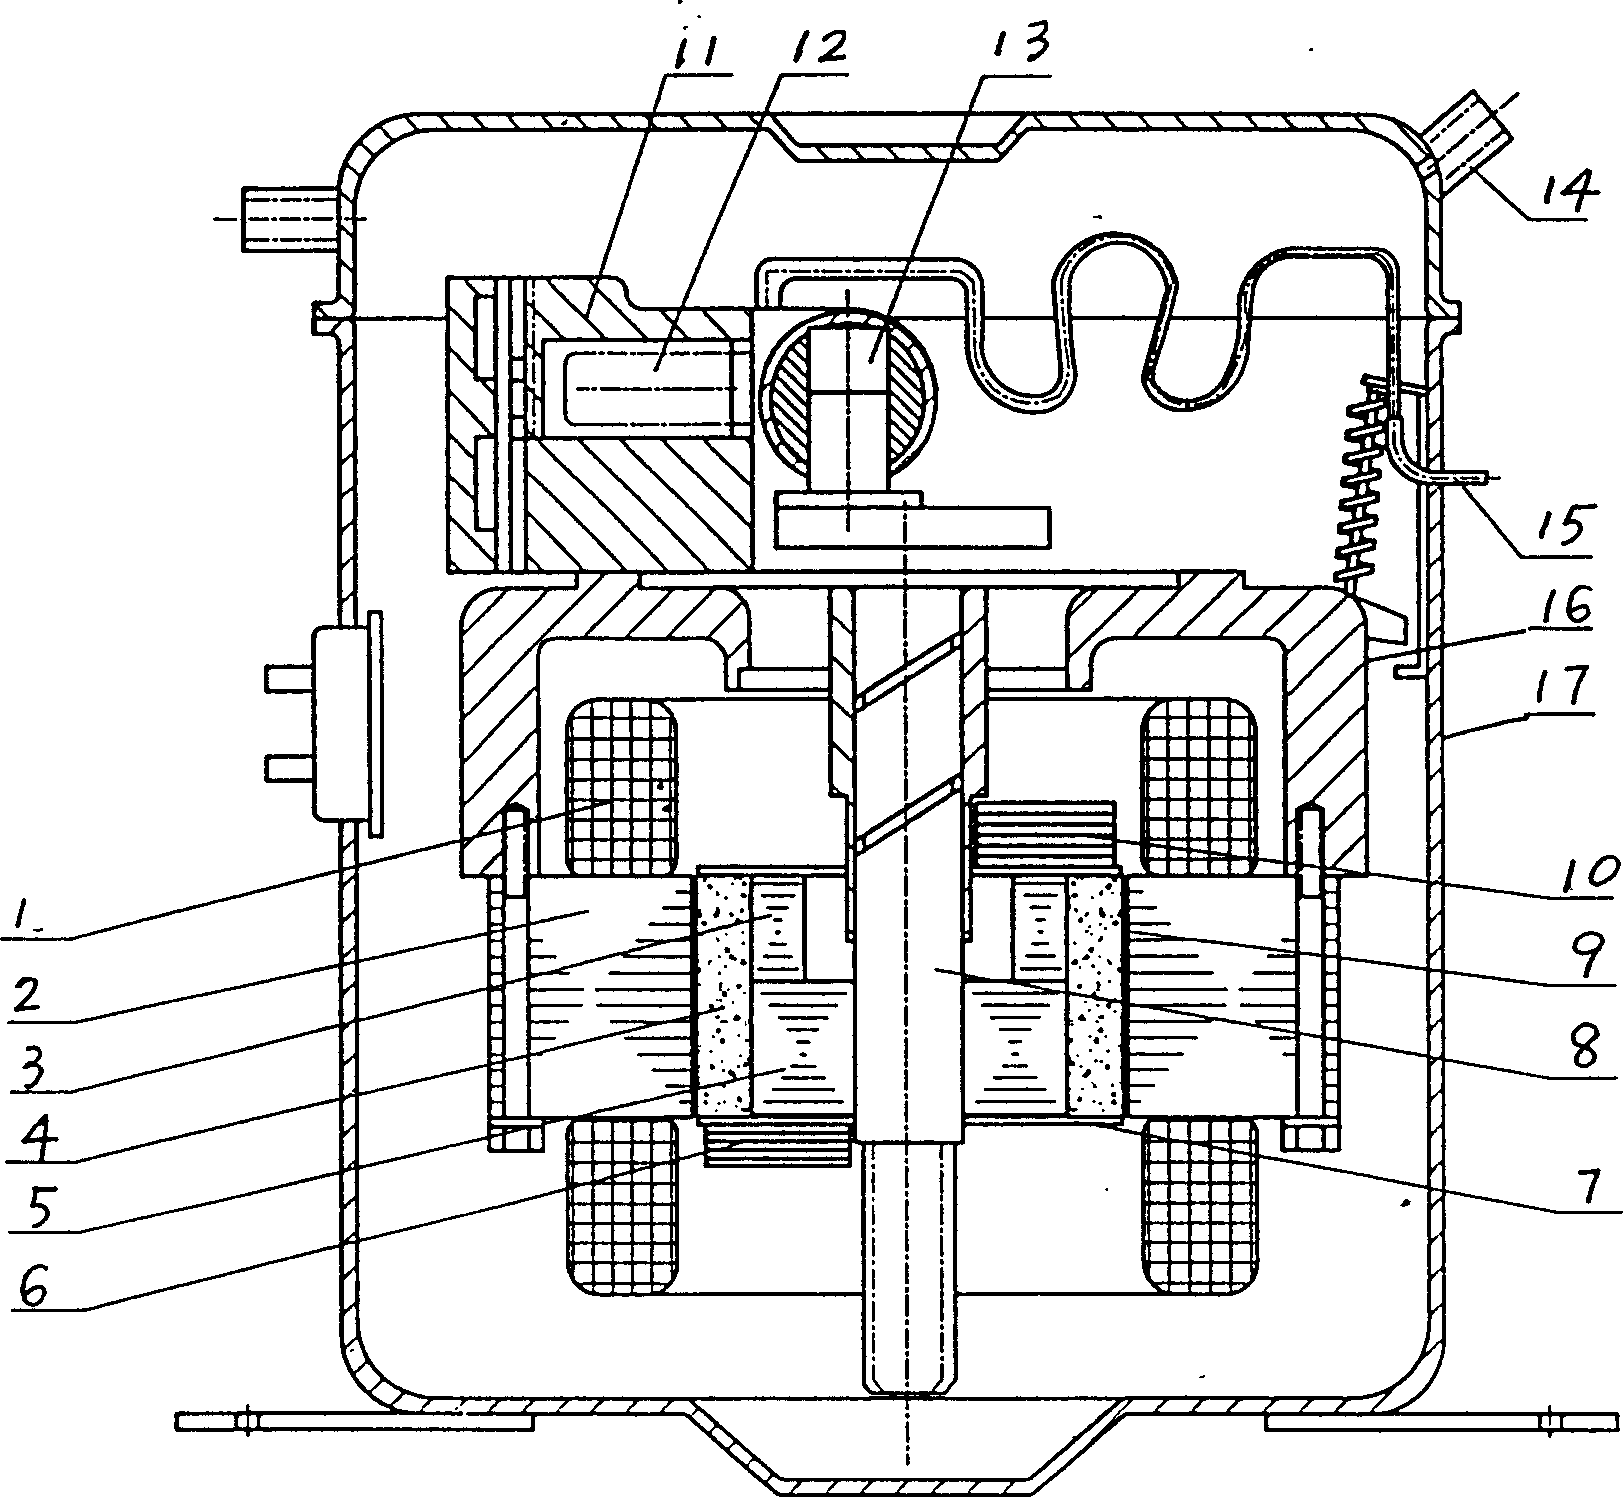 Compressor for refrigerator